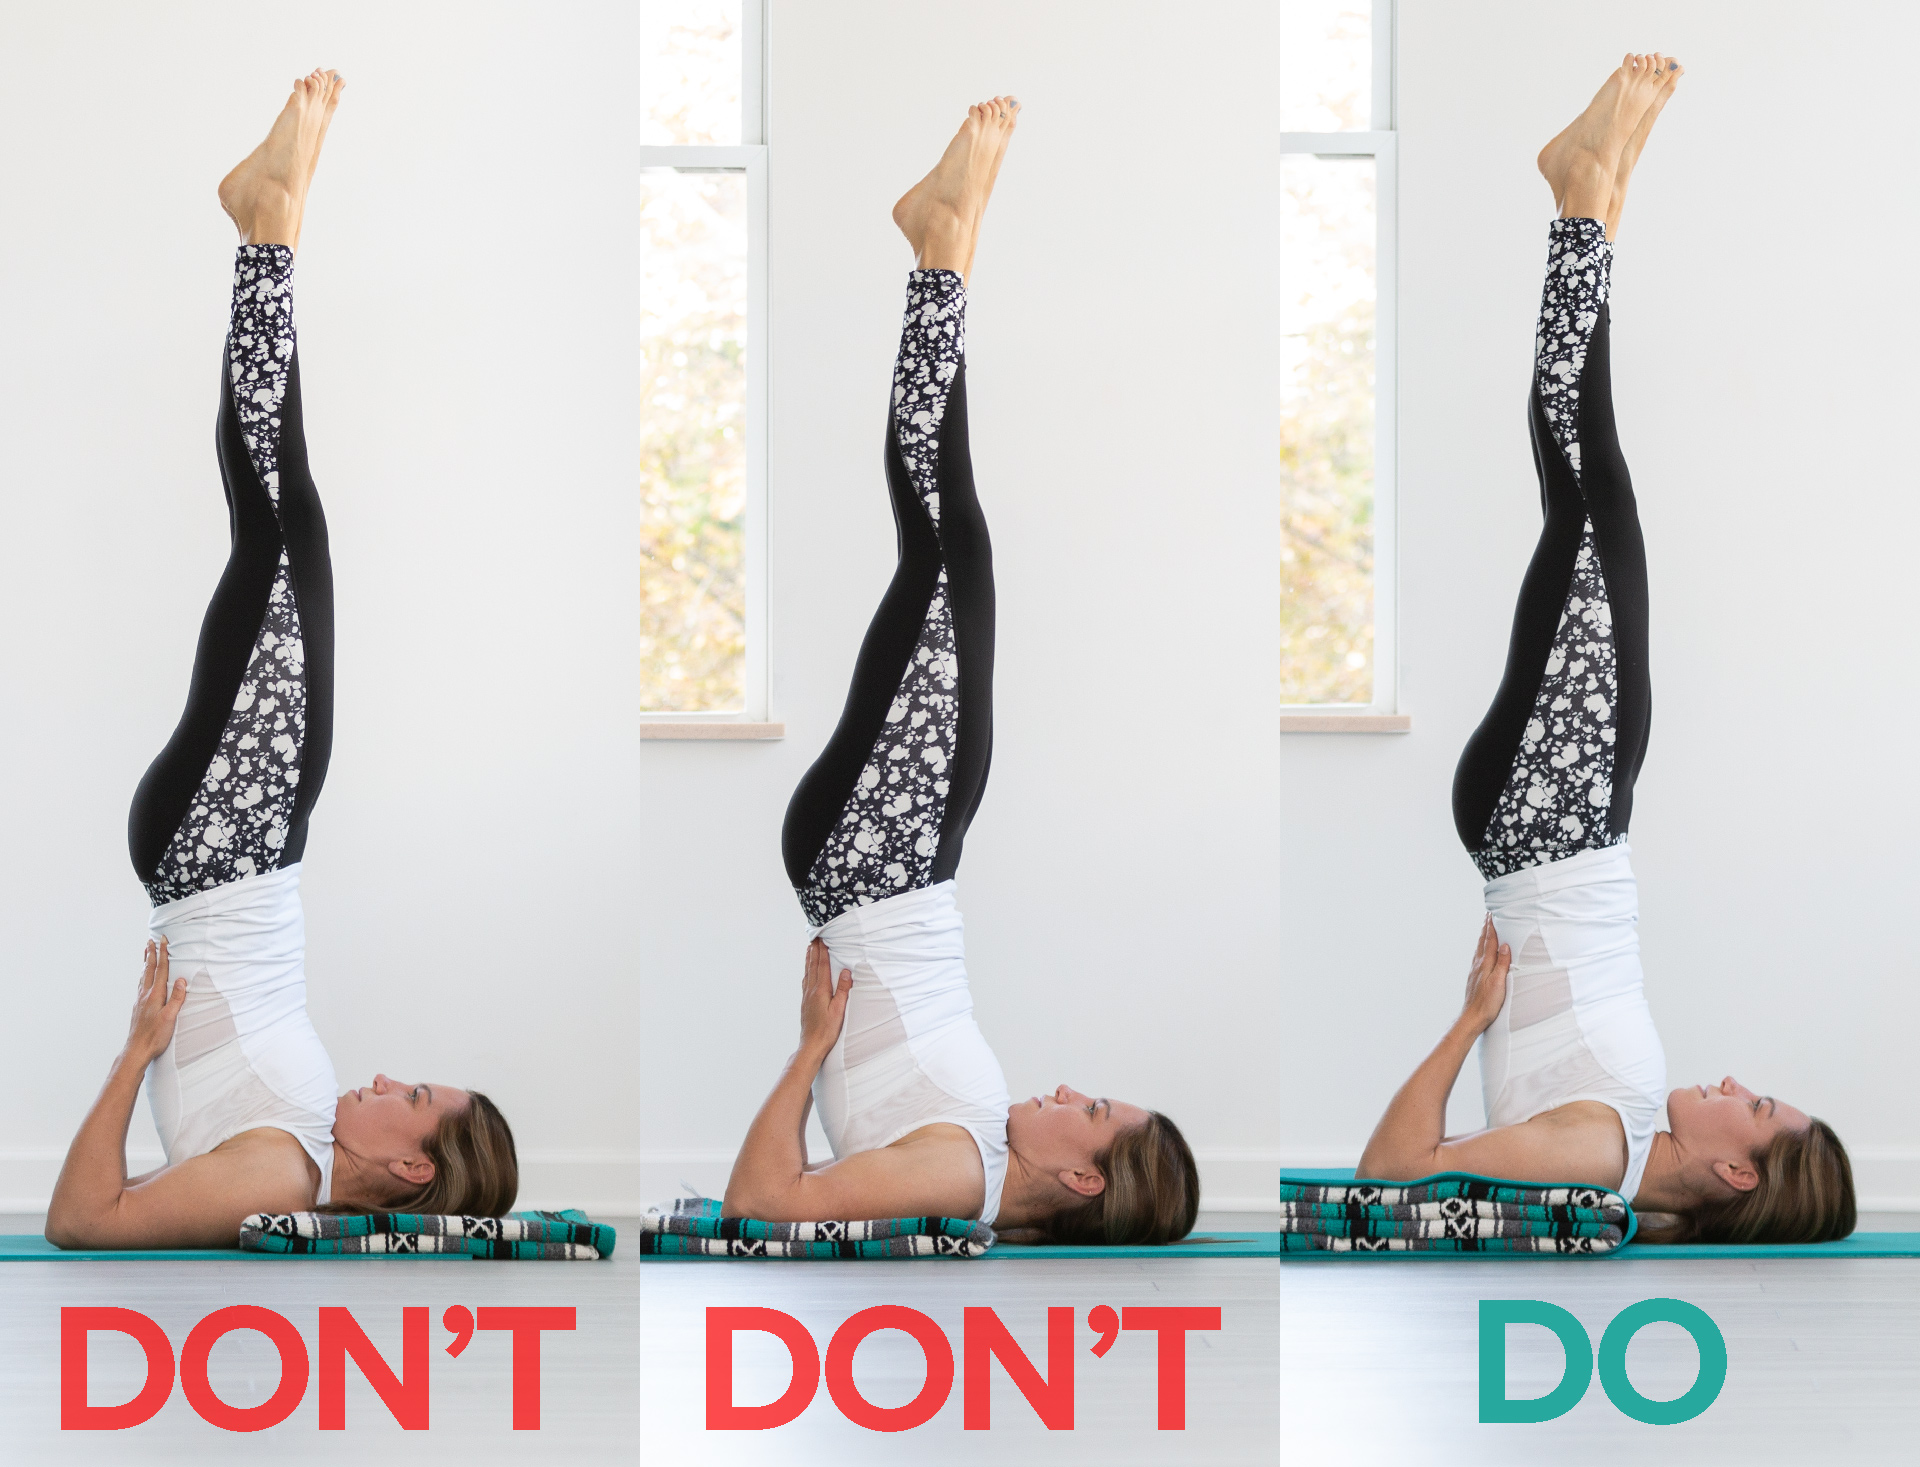 Mesa Back Pain Relief Exercises & Yoga Poses | BodyWorkz